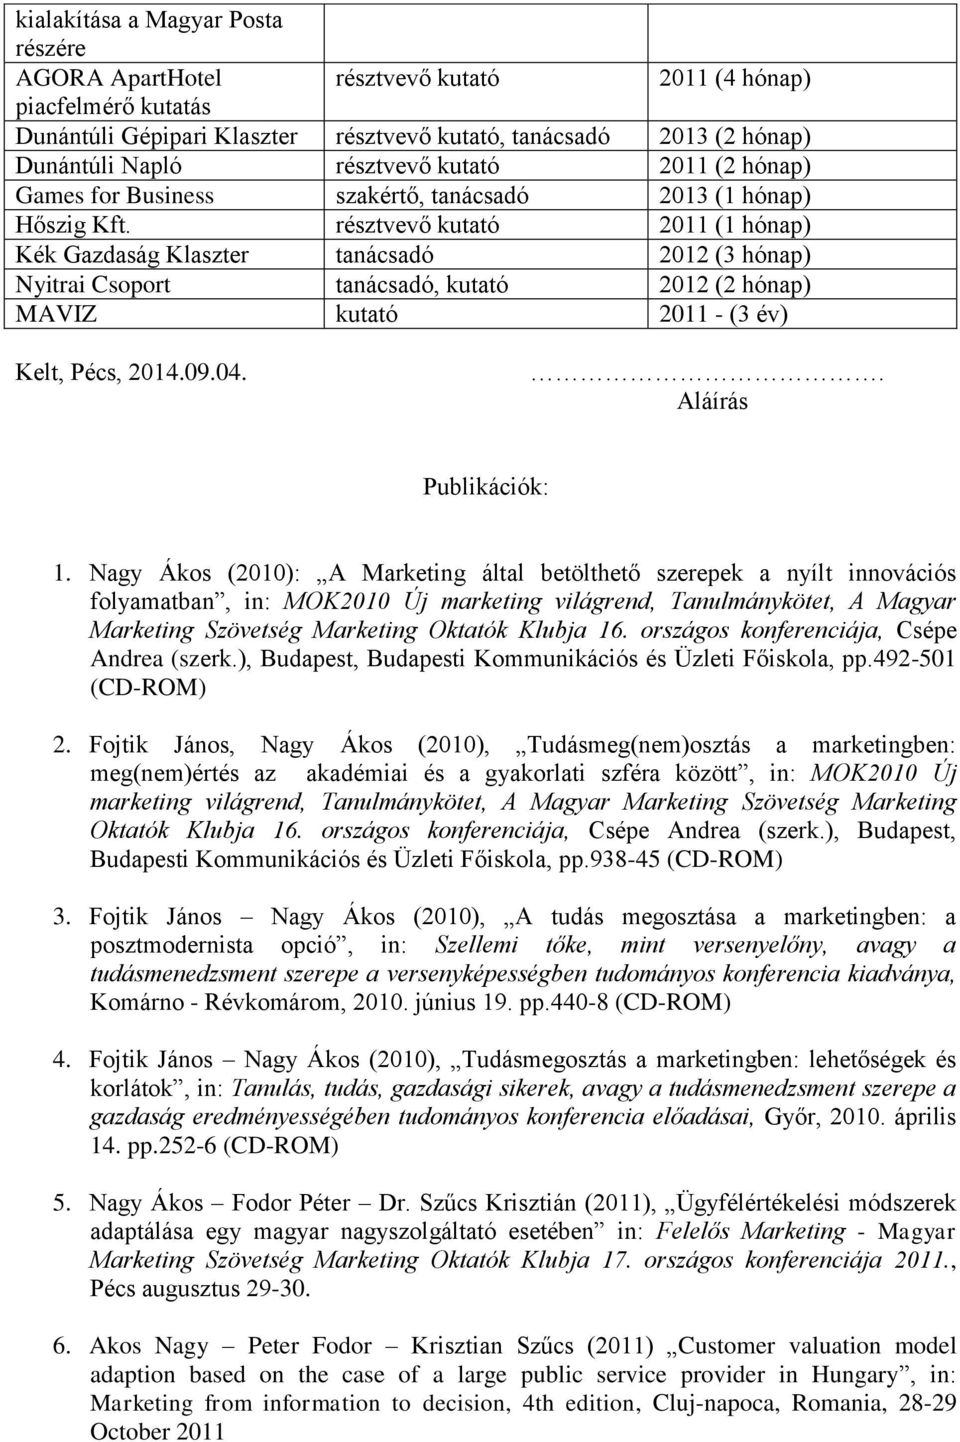 résztvevő kutató 2011 (1 hónap) Kék Gazdaság Klaszter tanácsadó 2012 (3 hónap) Nyitrai Csoport tanácsadó, kutató 2012 (2 hónap) MAVIZ kutató 2011 - (3 év) Kelt, Pécs, 2014.09.04.